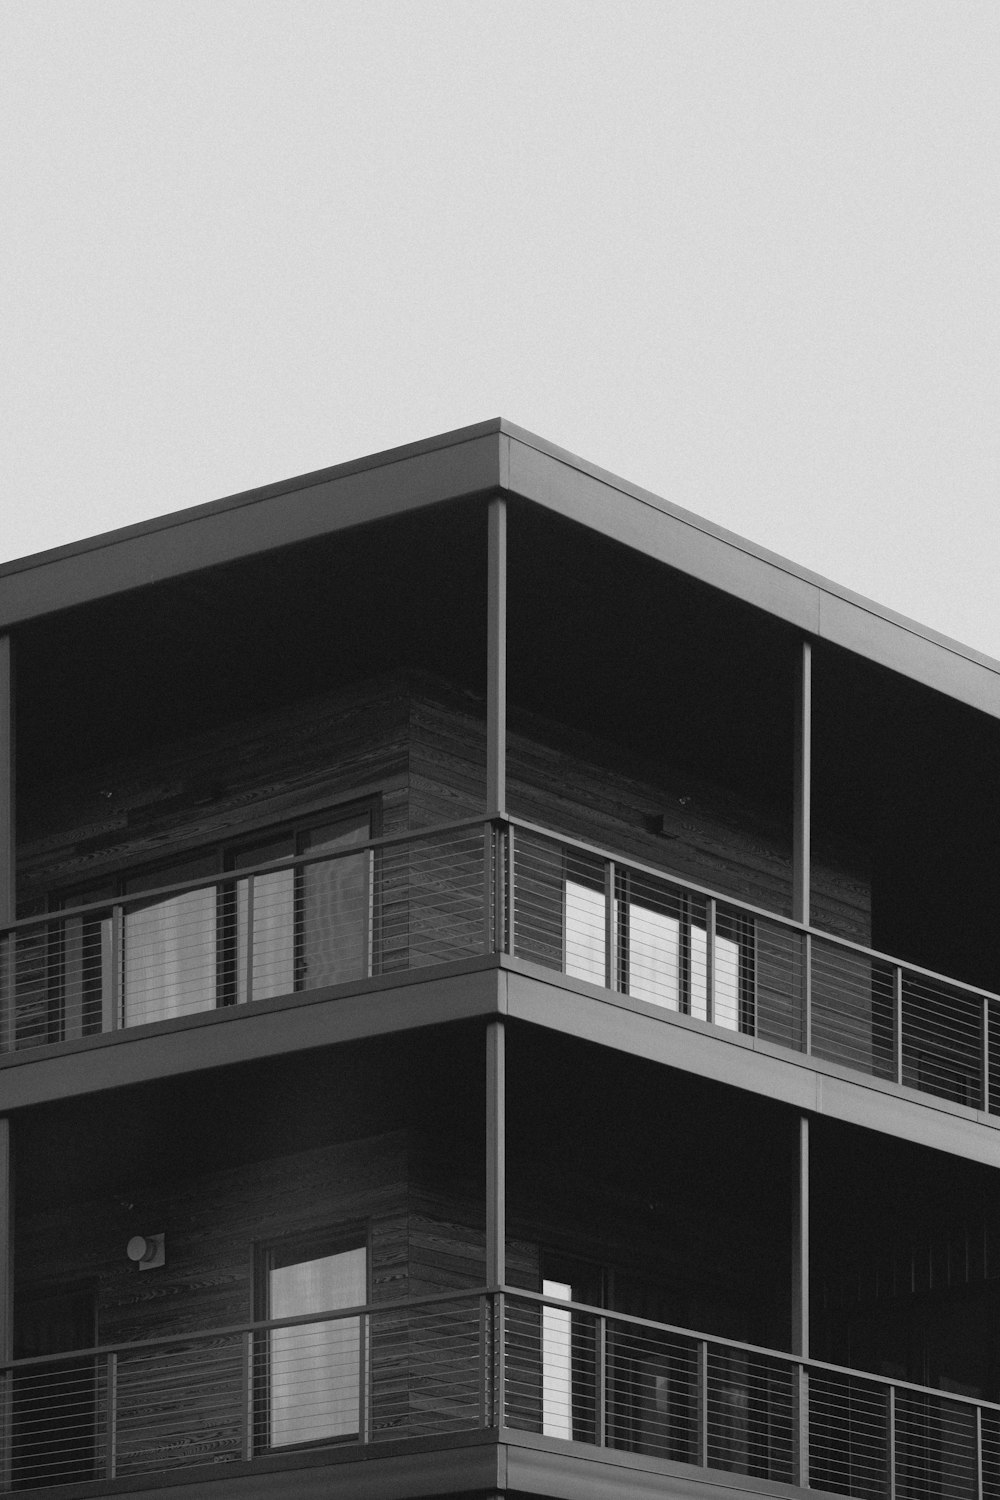 Una foto en blanco y negro de un edificio con balcones